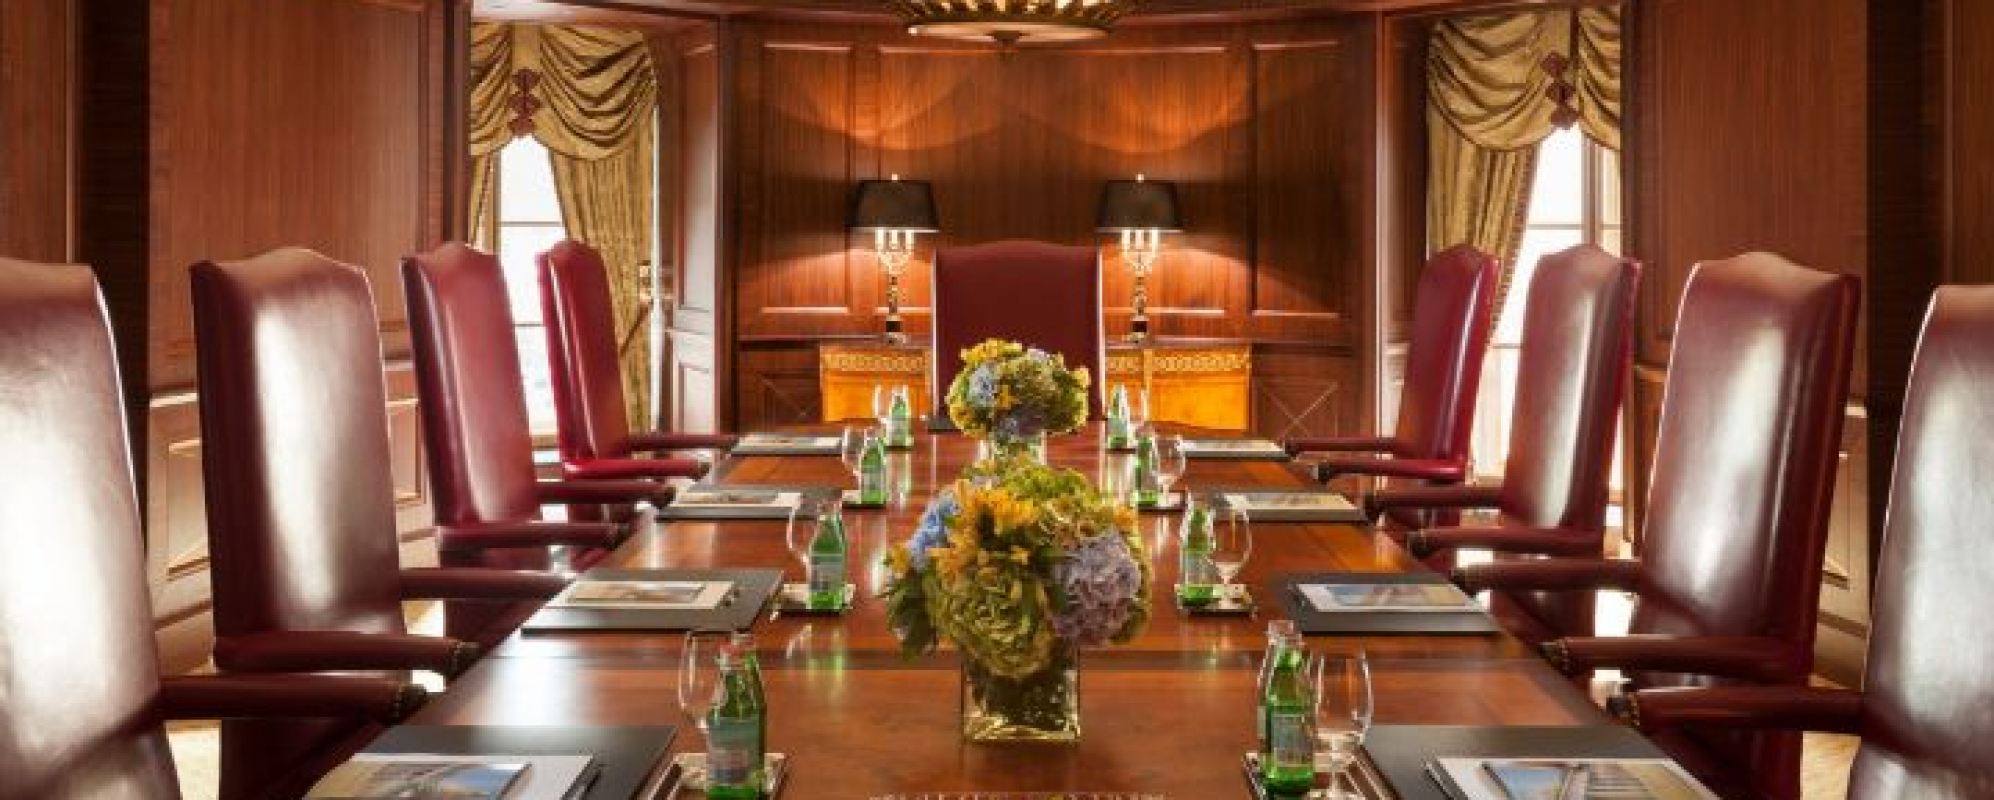 Фотографии комнаты для переговоров Зал для переговоров Растрелли